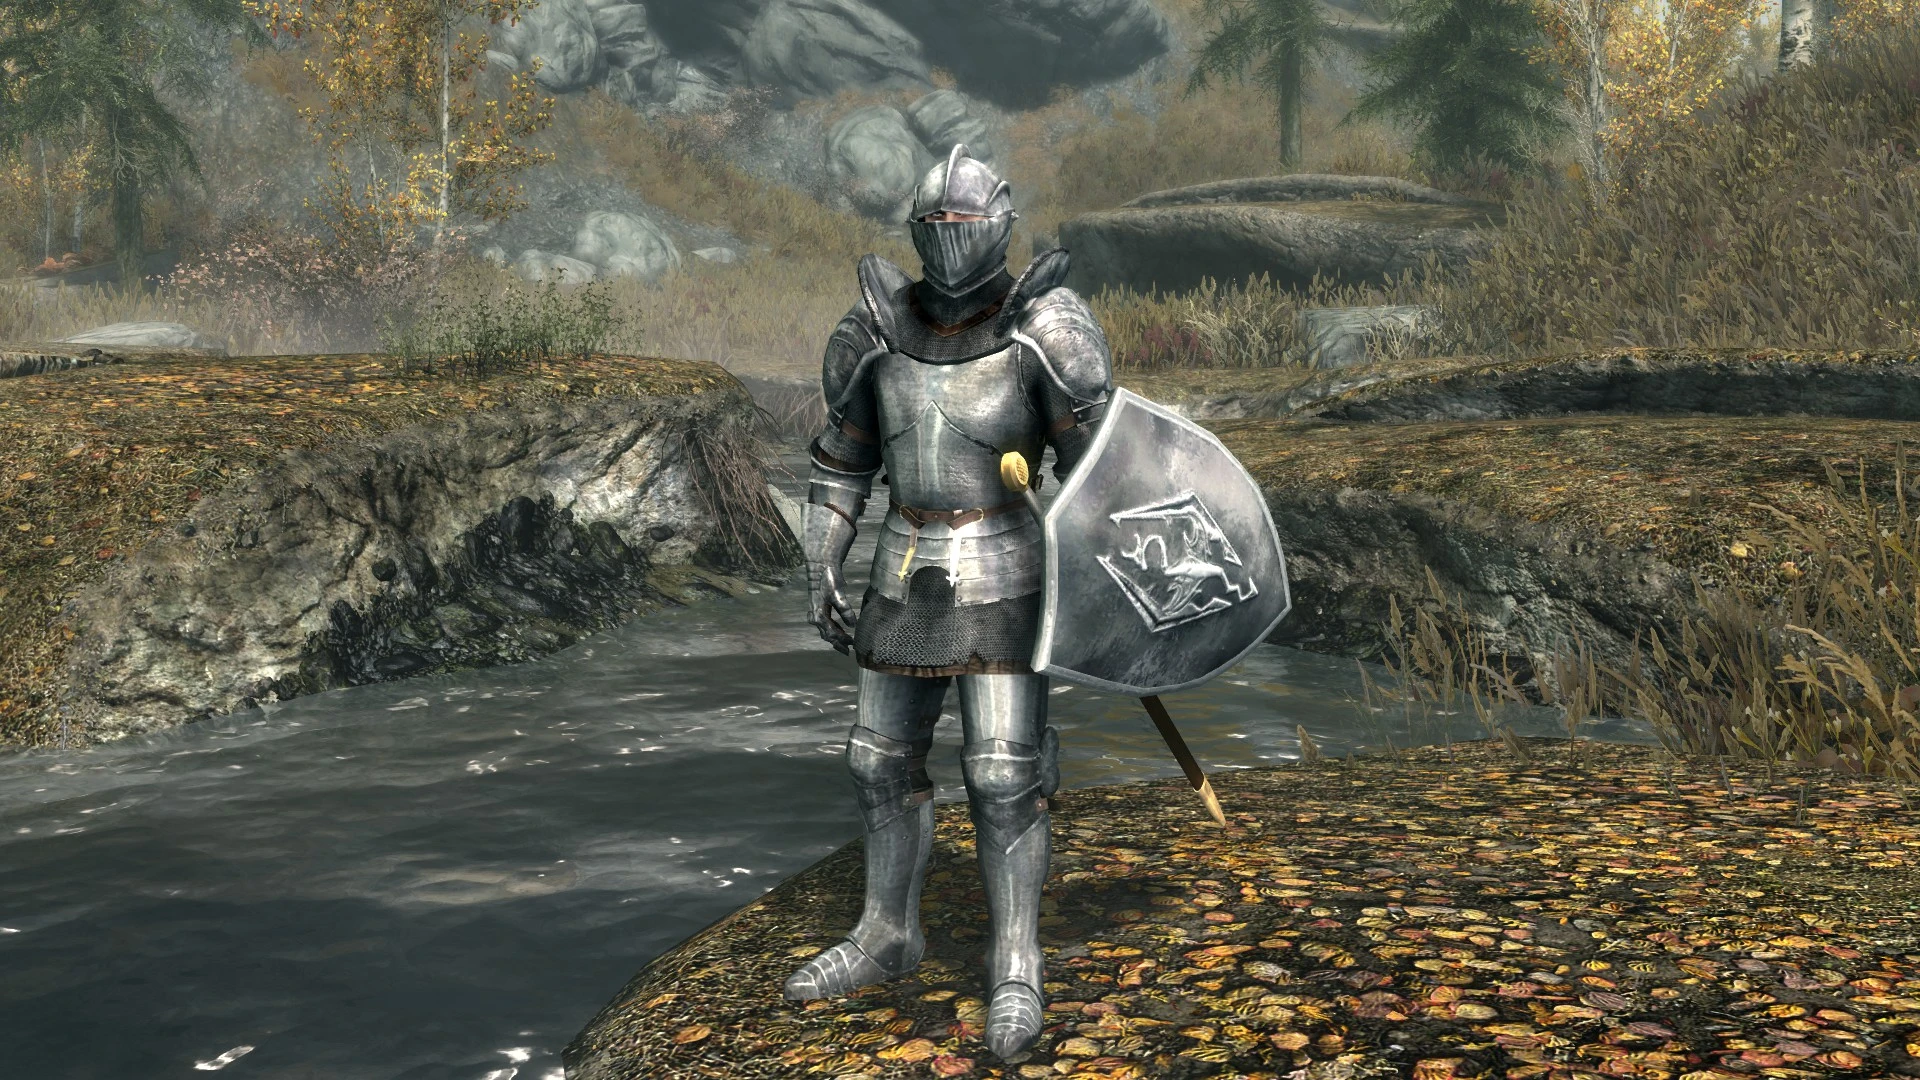 Armored knight iris photo